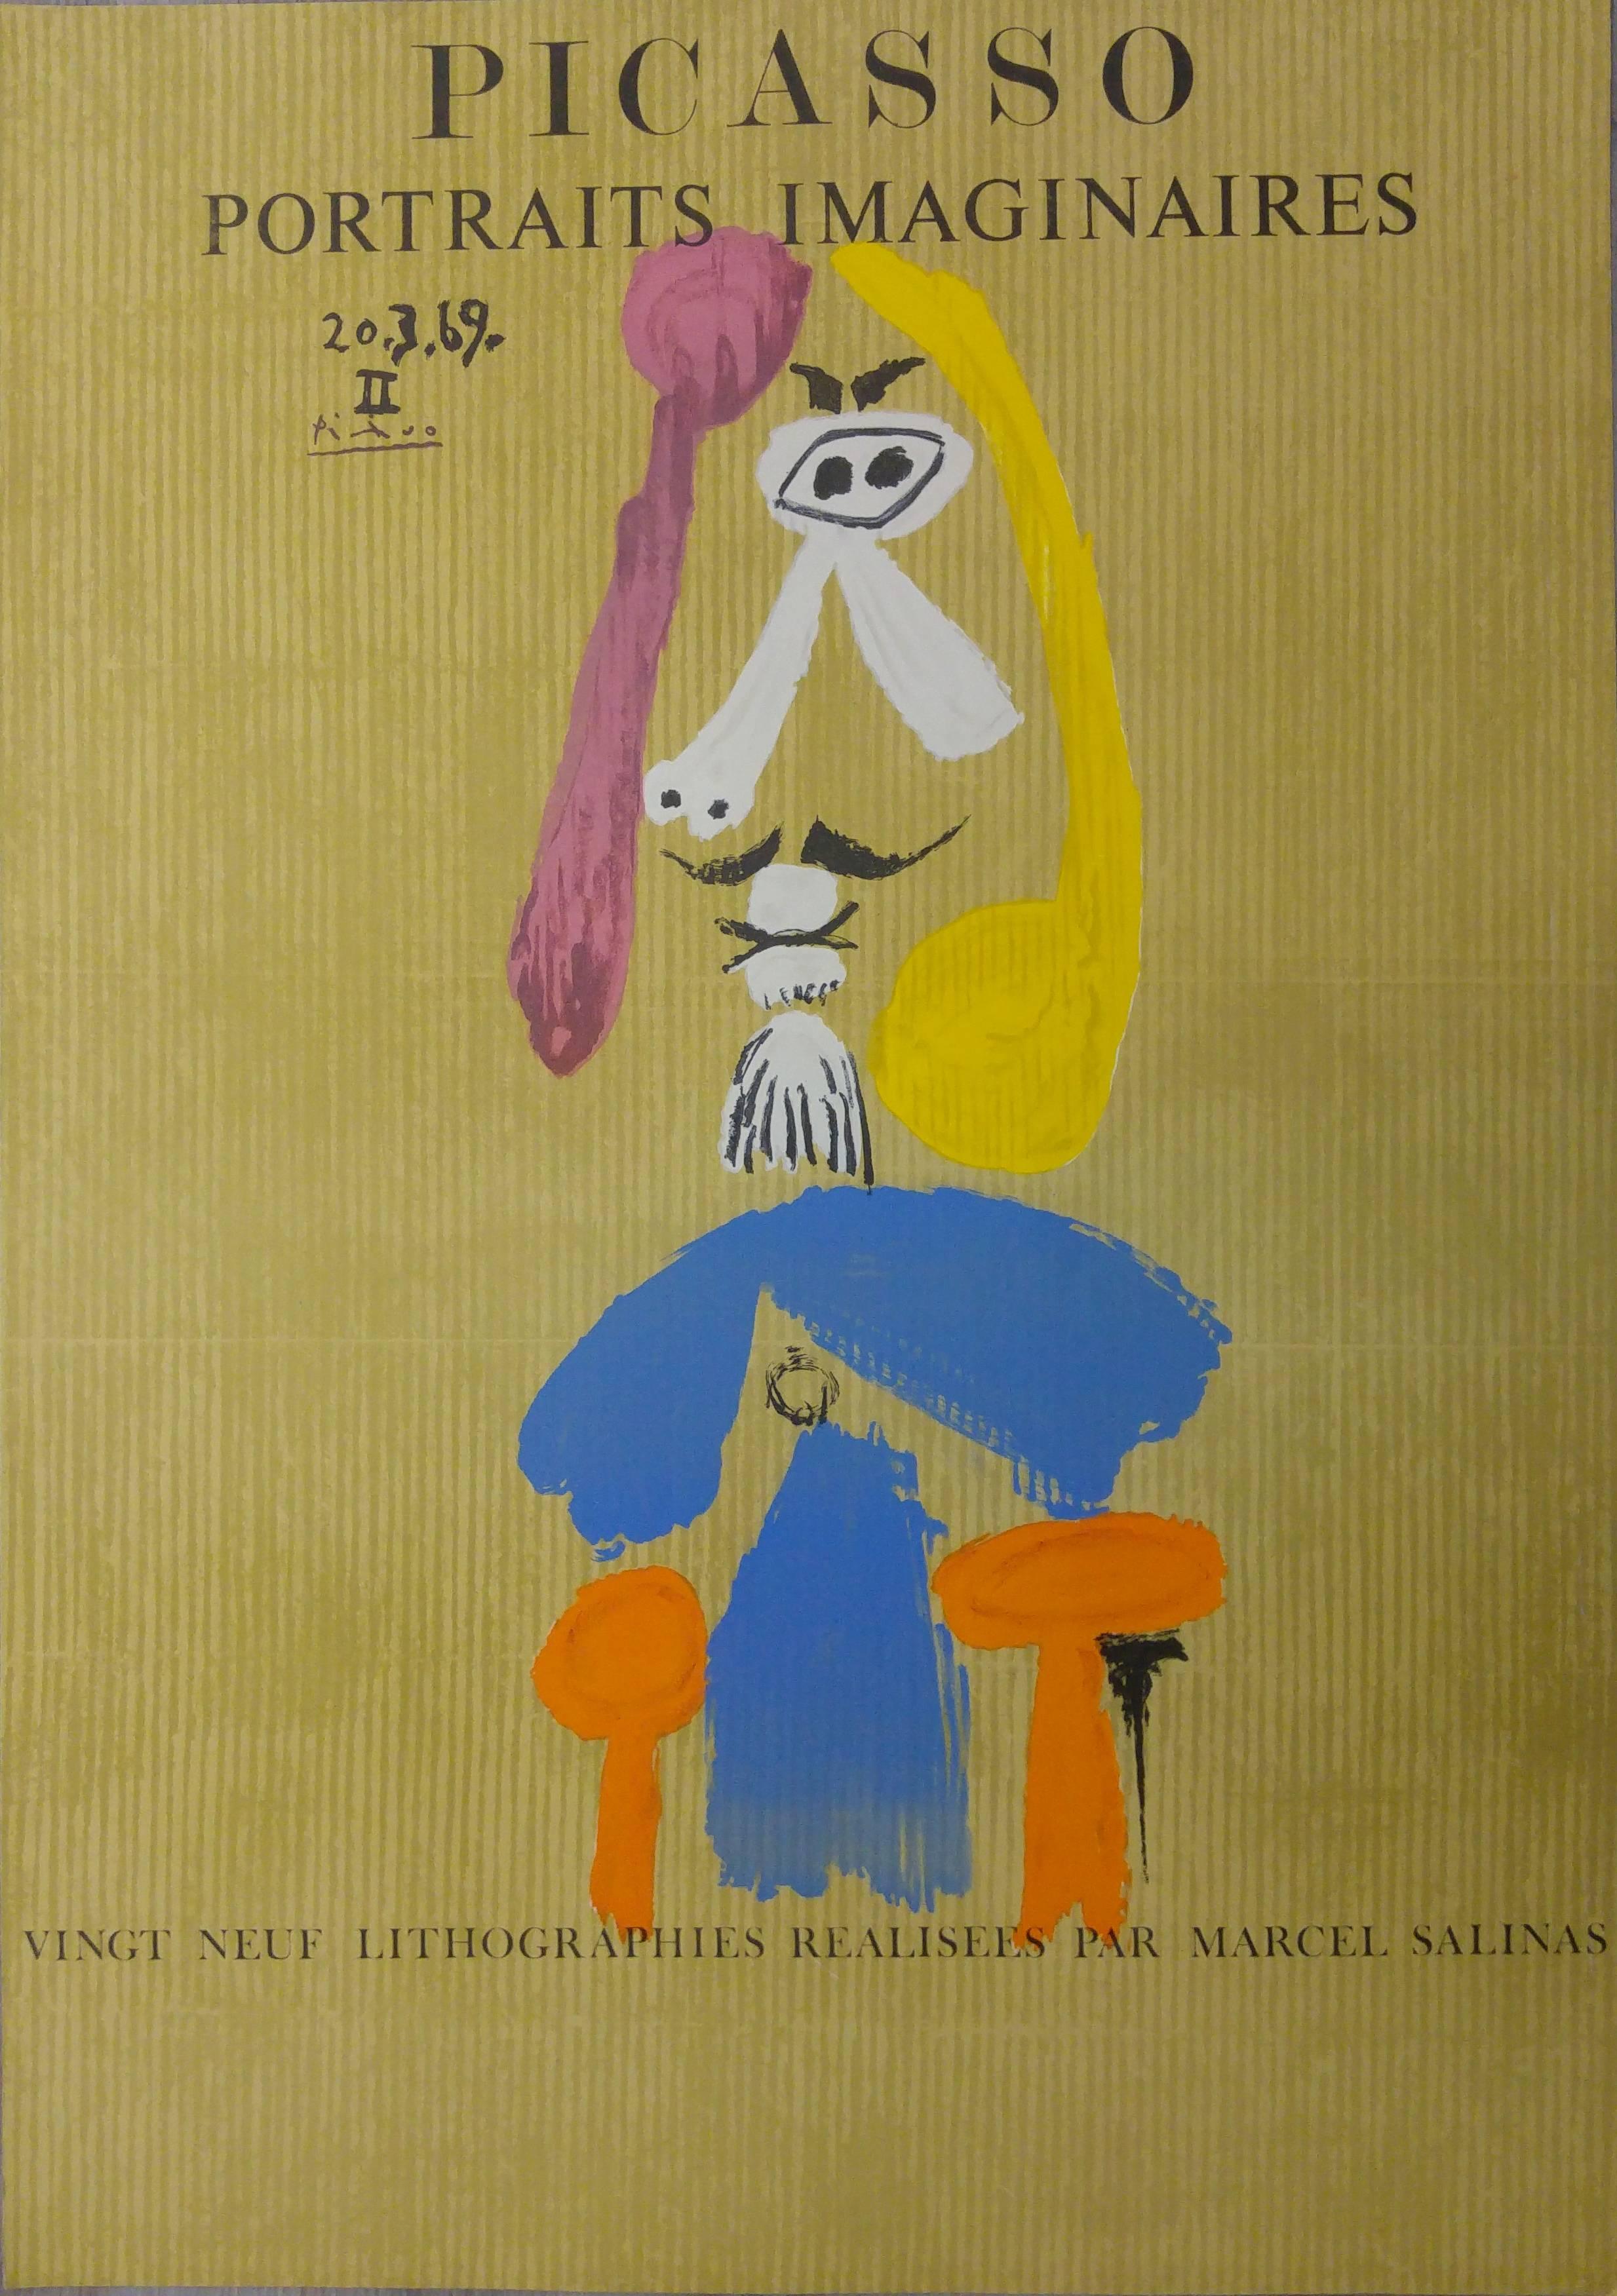 (after) Pablo Picasso Portrait Print – Imaginäre Porträts: Mann mit Ziegenleder - Lithographie - 1971